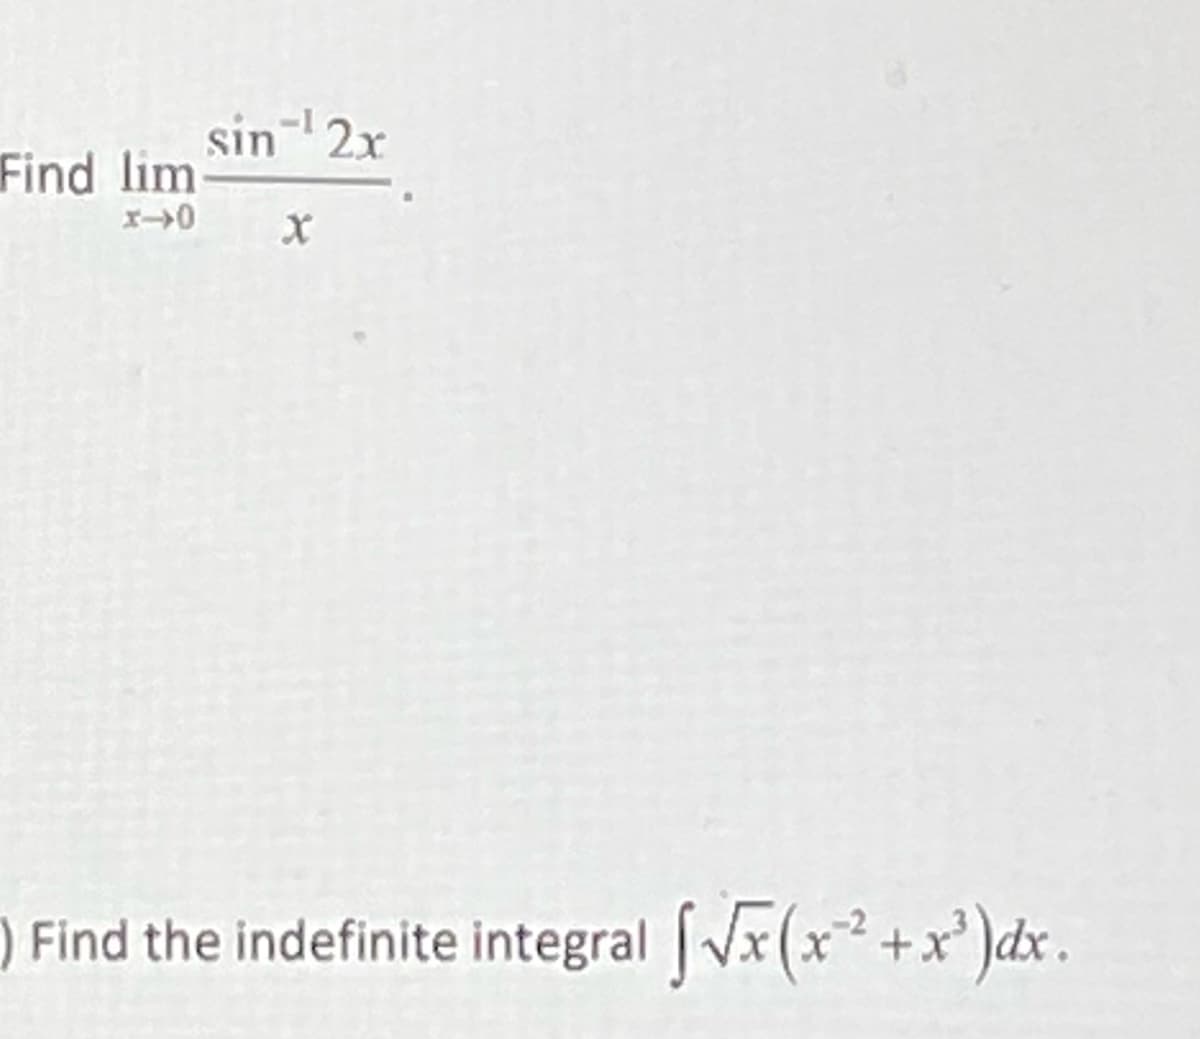 sin- 2x
Find lim
) Find the indefinite integral Vx(x+x')dx .
